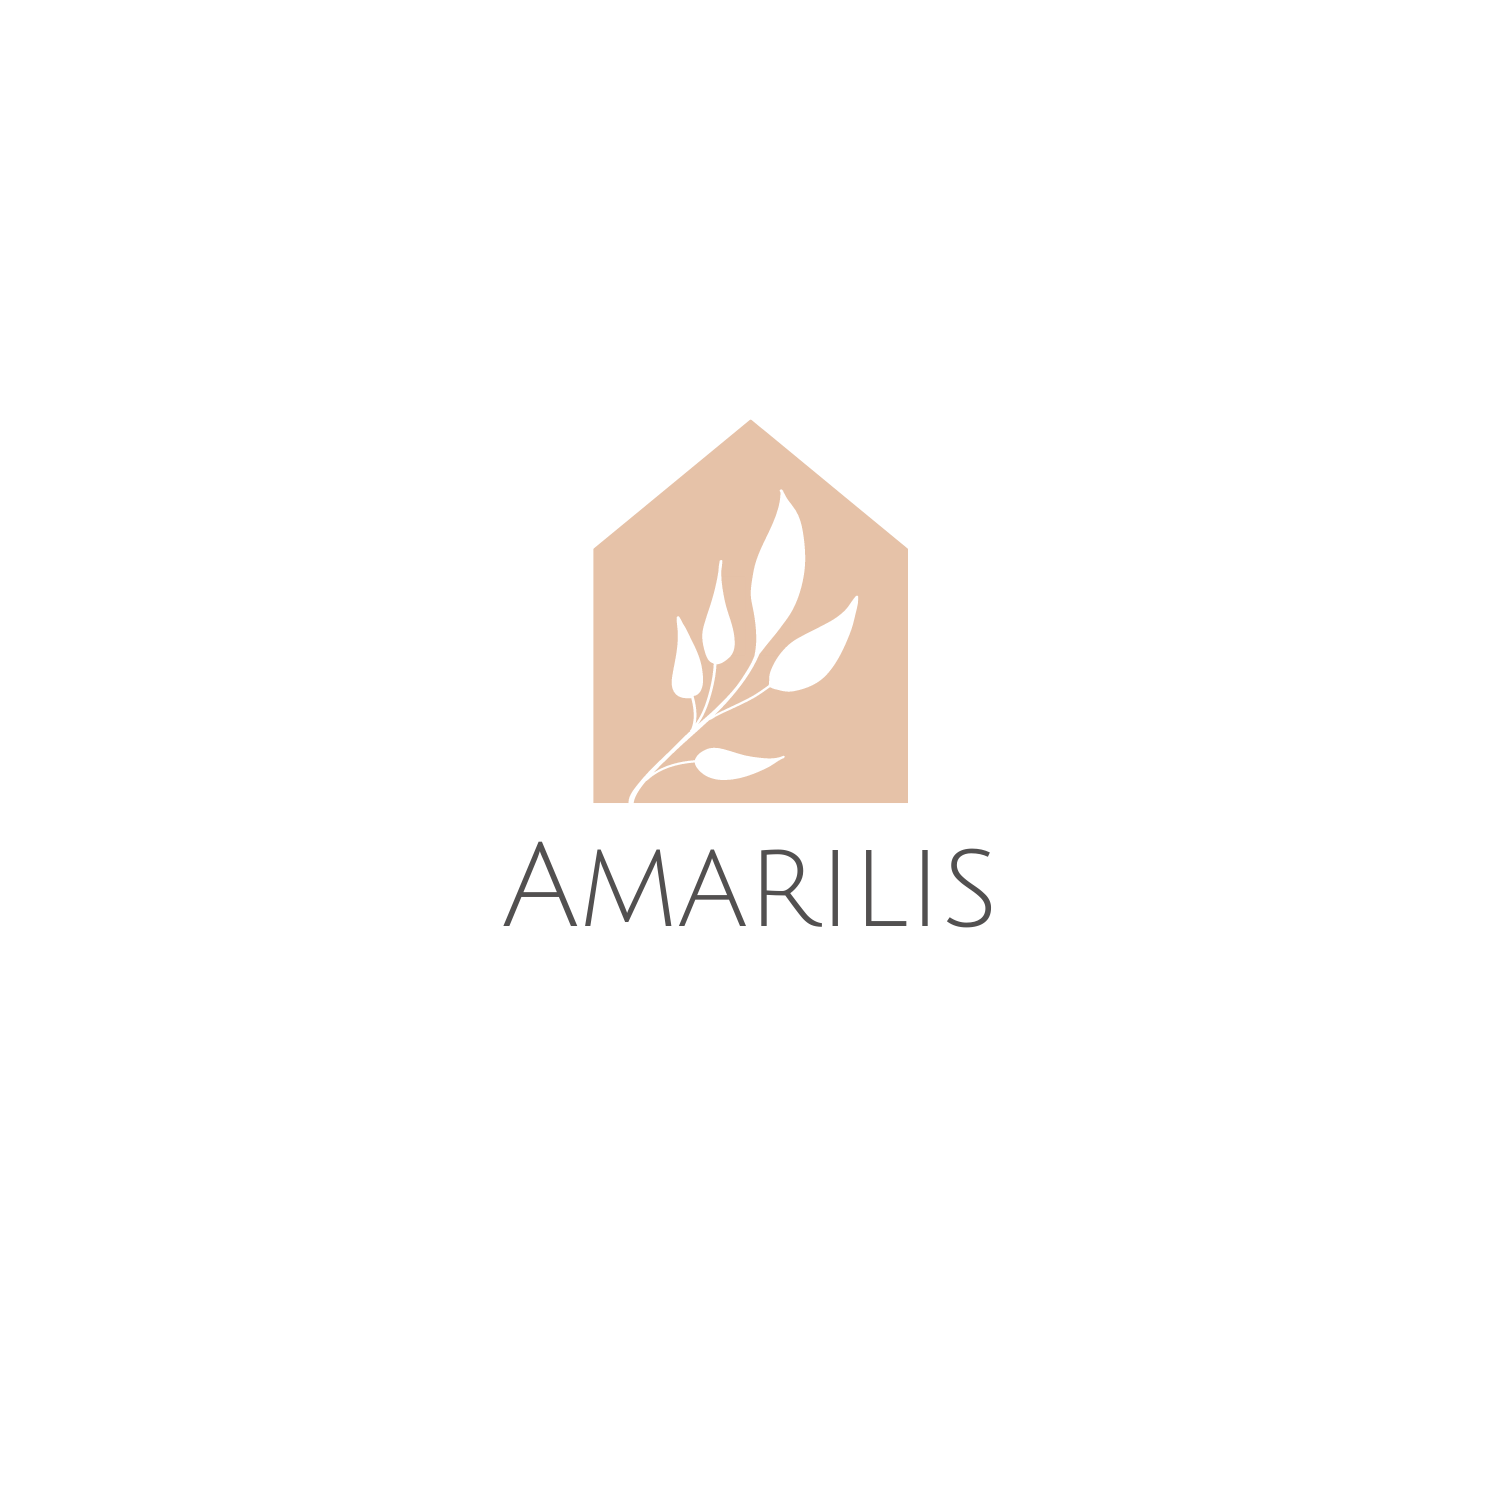 Amarilis